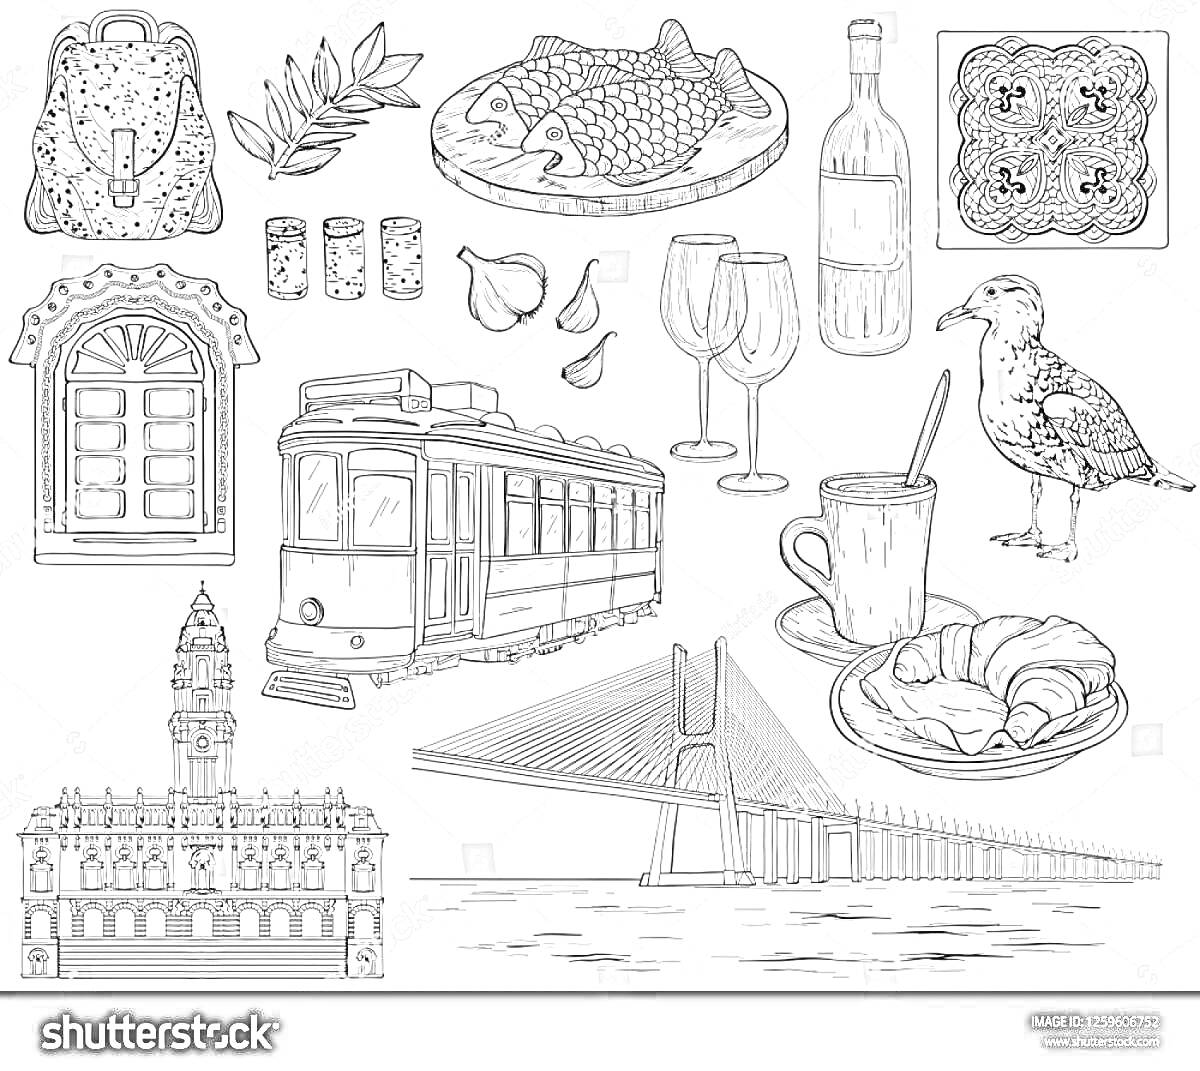 Раскраска Коллаж Португалия: традиционная керамика, оливковая ветка, рыба гриль на деревянной тарелке, две плитки, вино в бутылке и бокалы, плитка азулежу, арочное окно, чеснок, традиционный трамвай, чай с круассанами, мост, башня, здание с башней, чайка